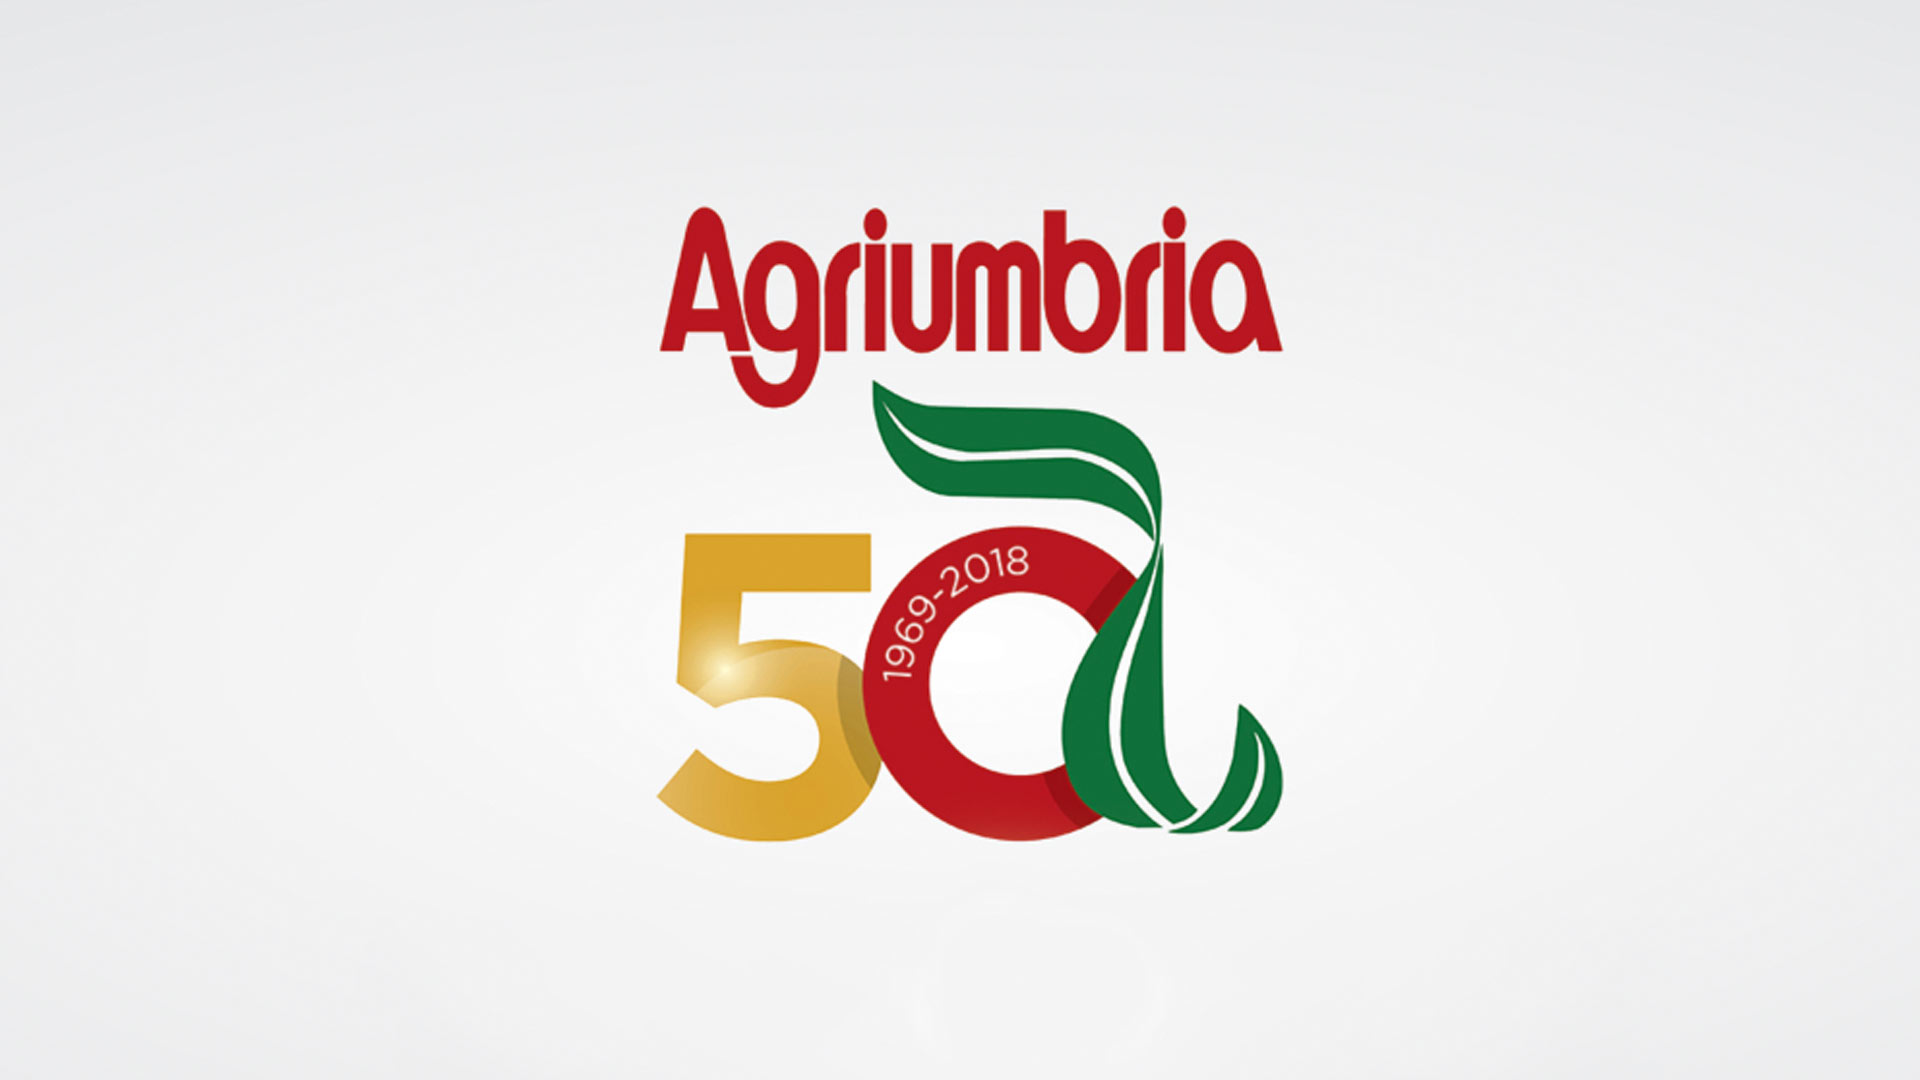 agriumbria 2018